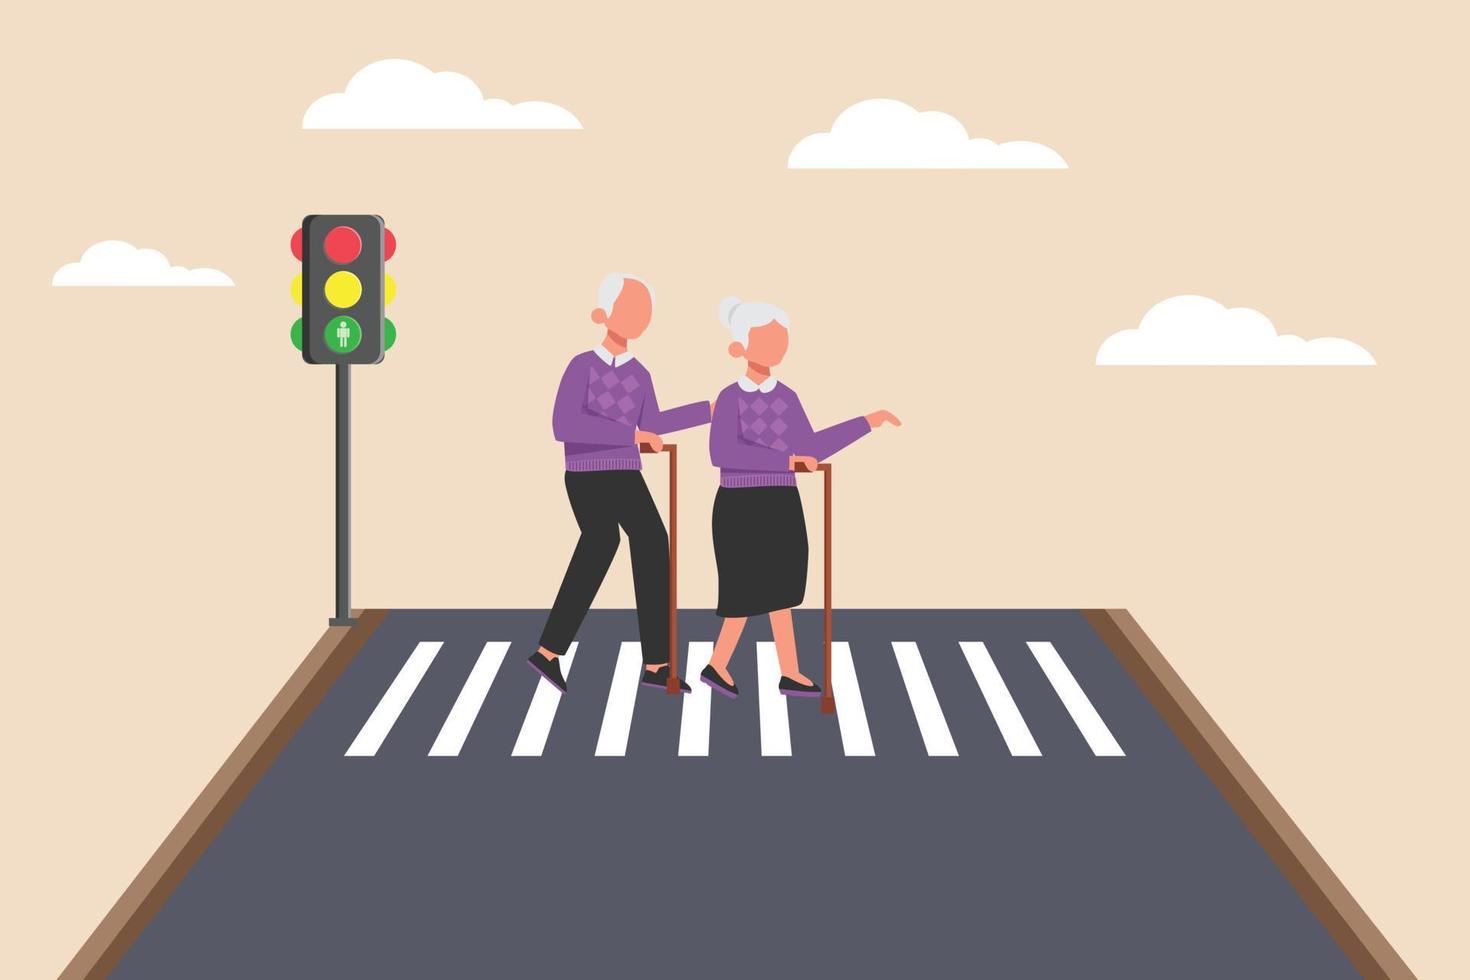 i nonni stanno camminando su una croce zebrata per strada. concetto di strada o di traffico. illustrazione vettoriale piatta isolata.